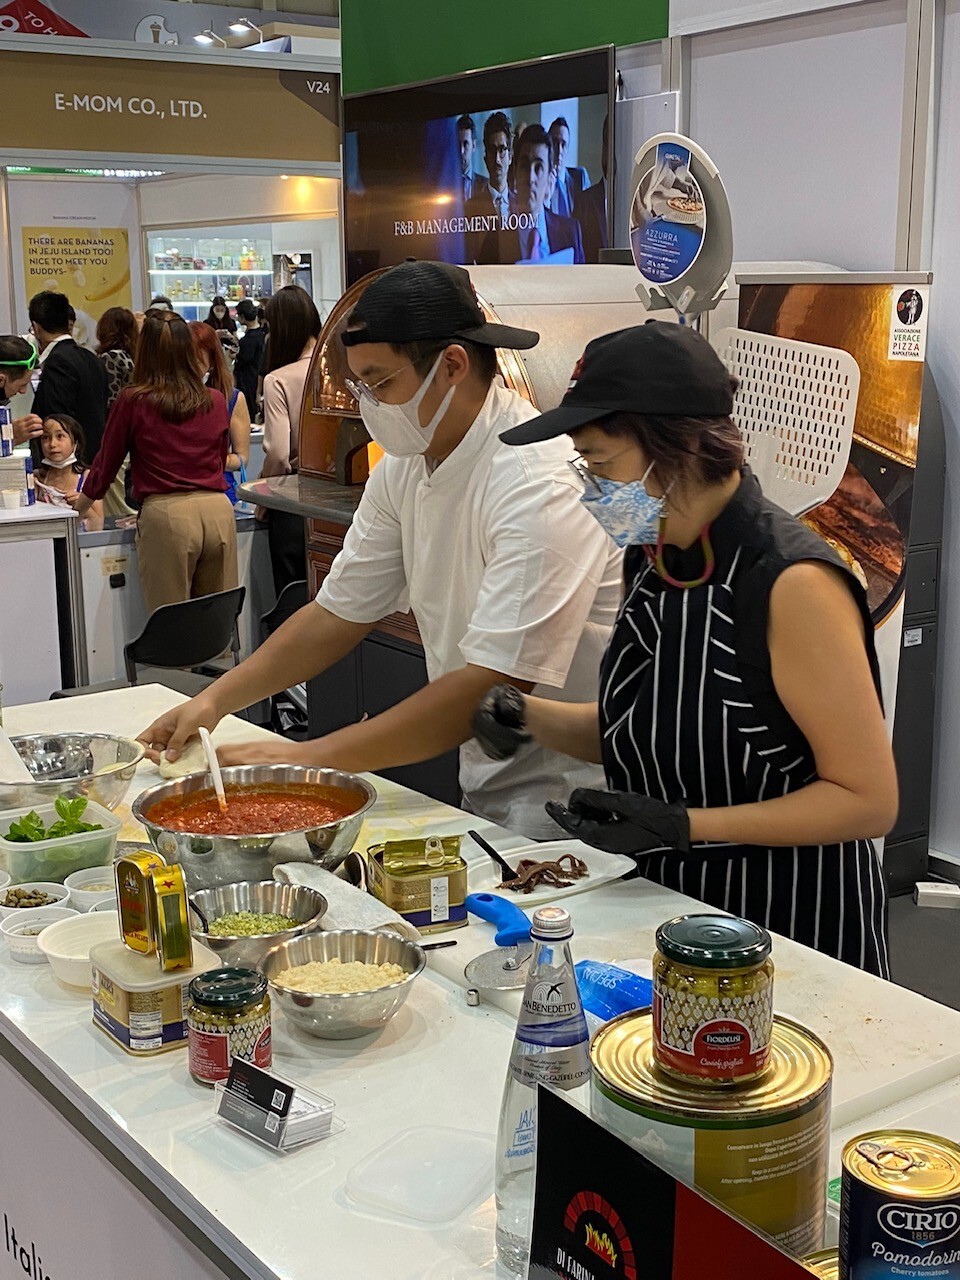 CSO Italy เปิดตัวโครงการ "ศาสตร์ศิลป์แห่งรสชาติแบบยุโรป สุดยอดผลิตภัณฑ์ผักและผลไม้แห่งอิตาลี" ในประเทศไทย